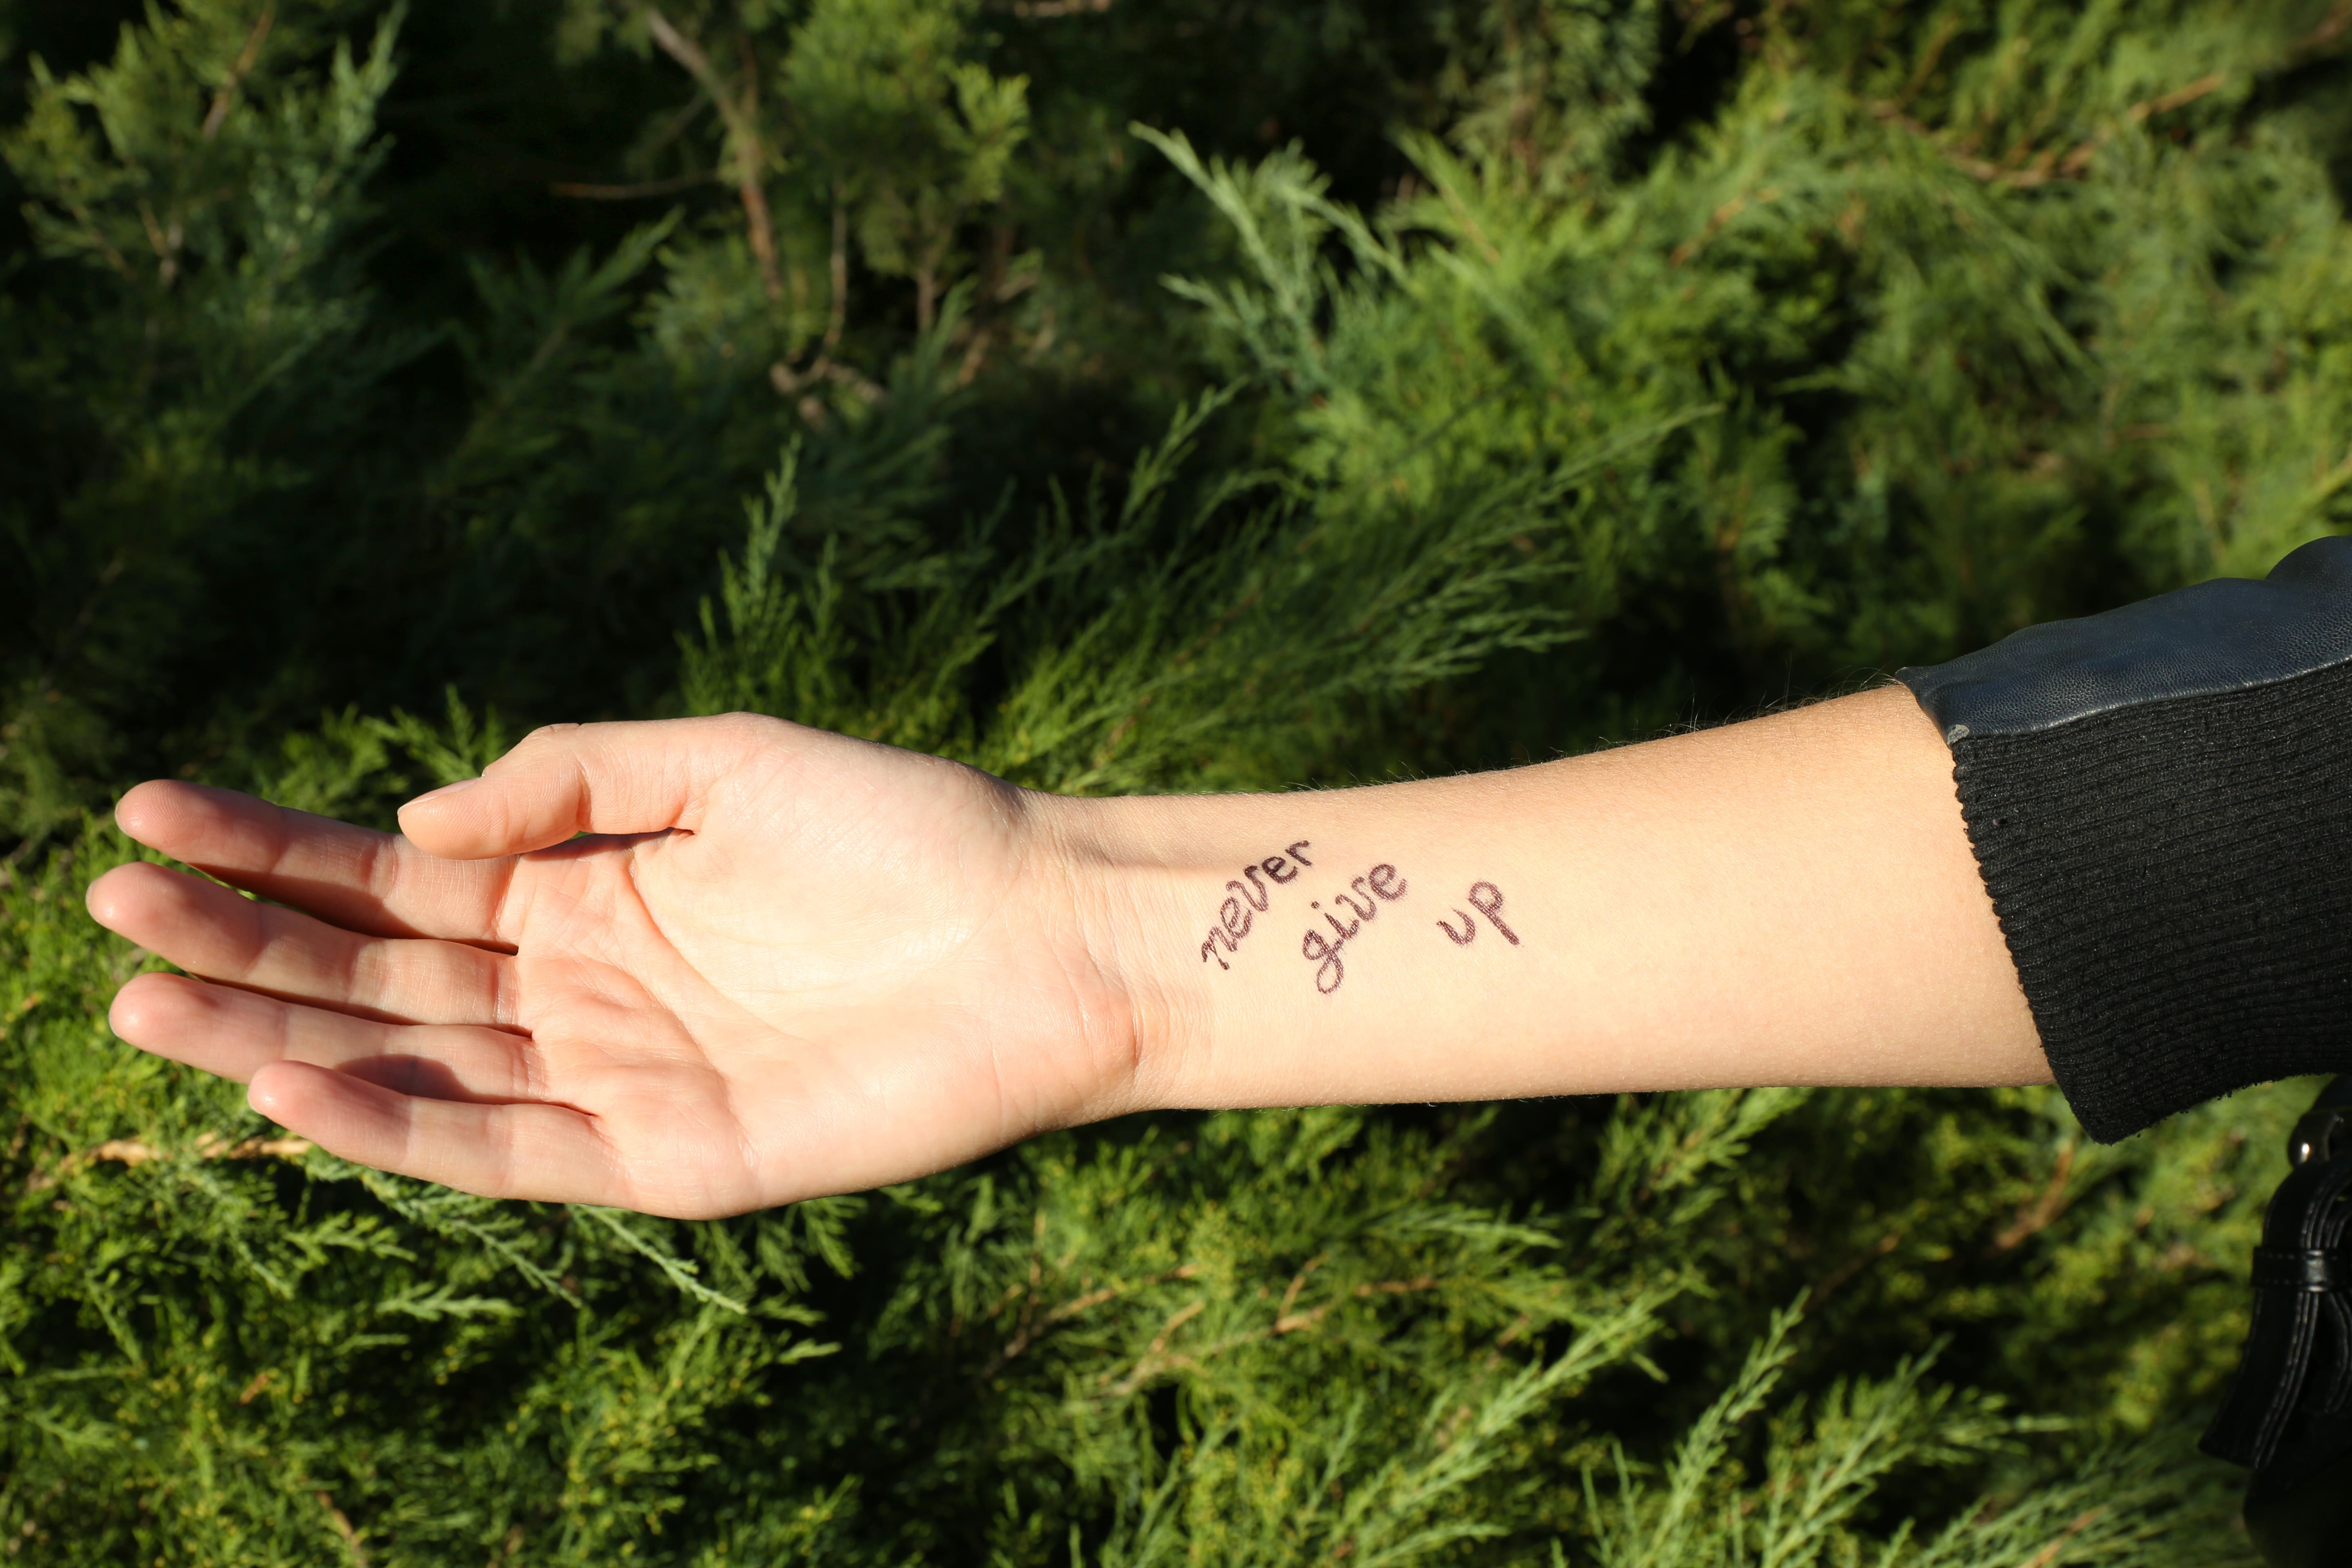 Foto de braço com uma tatuagem escrita "never give up"